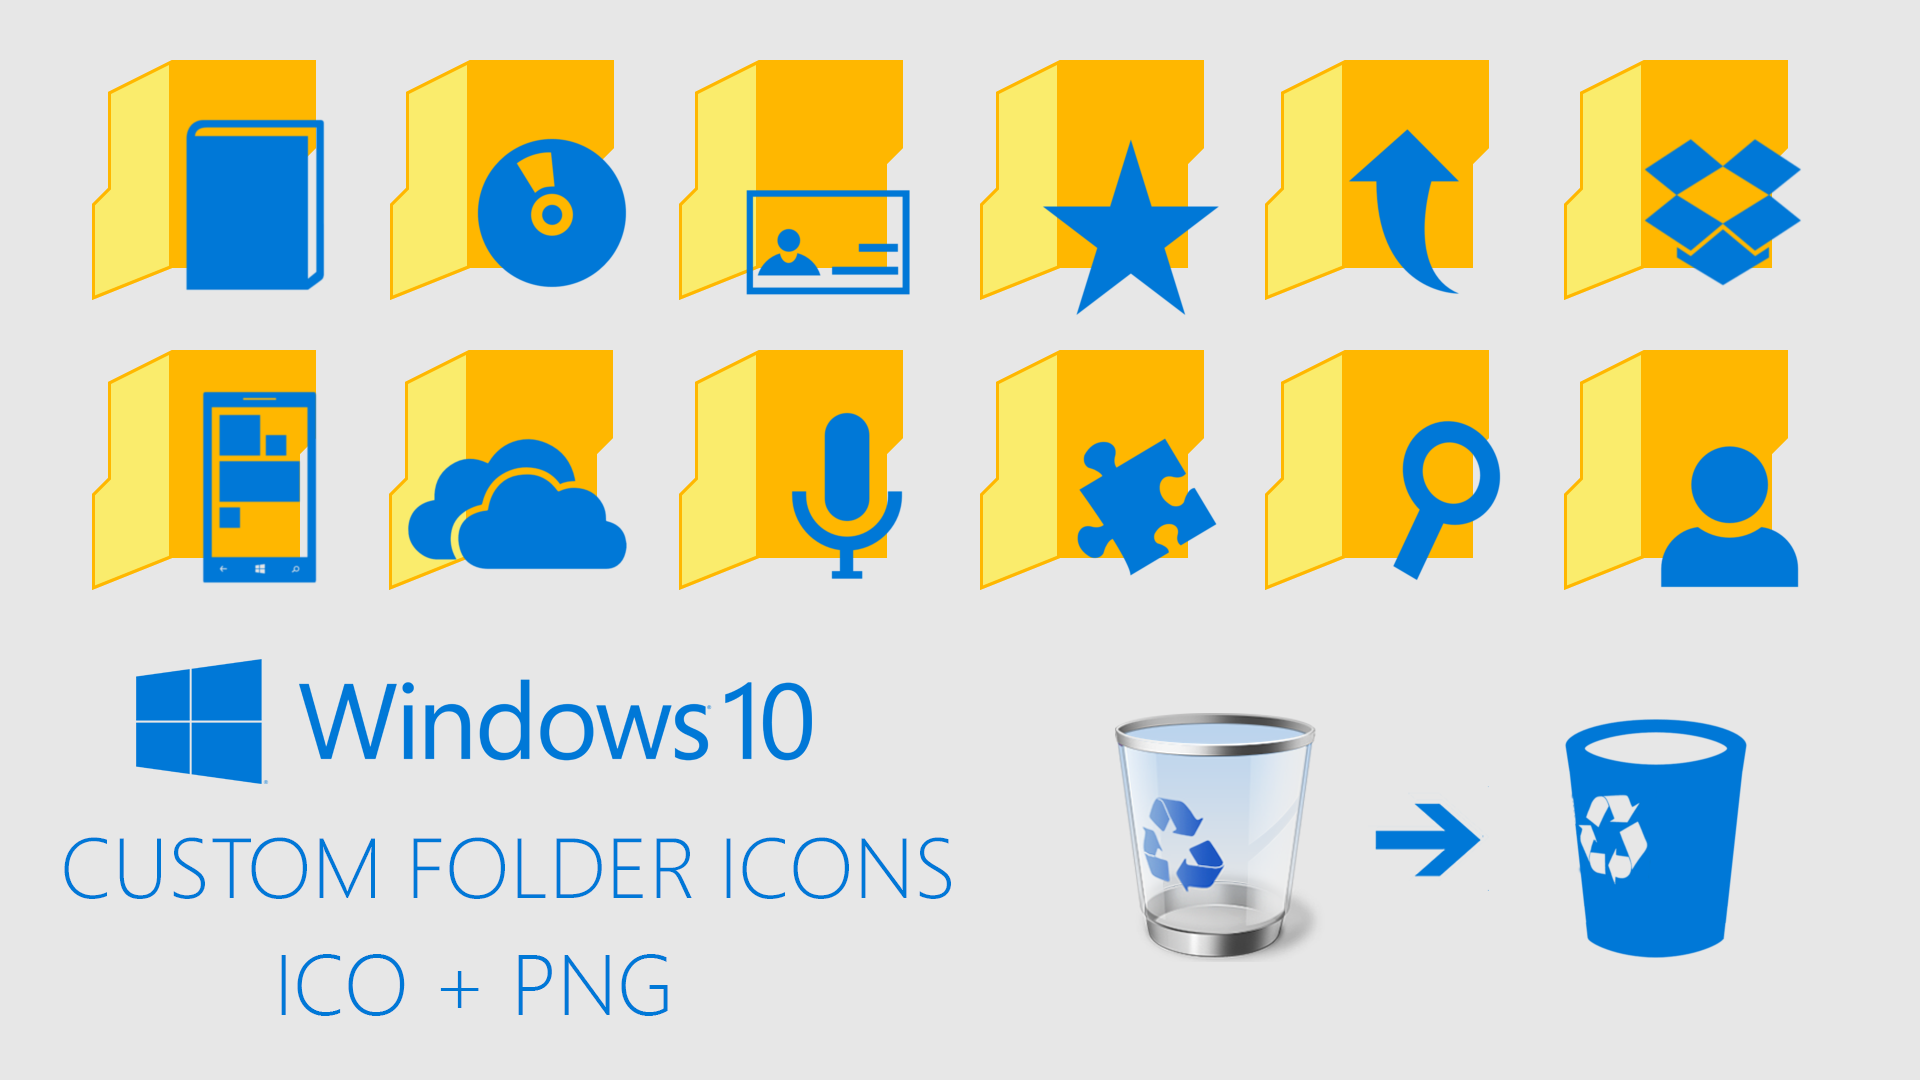 8 Custom Folder Icons Images